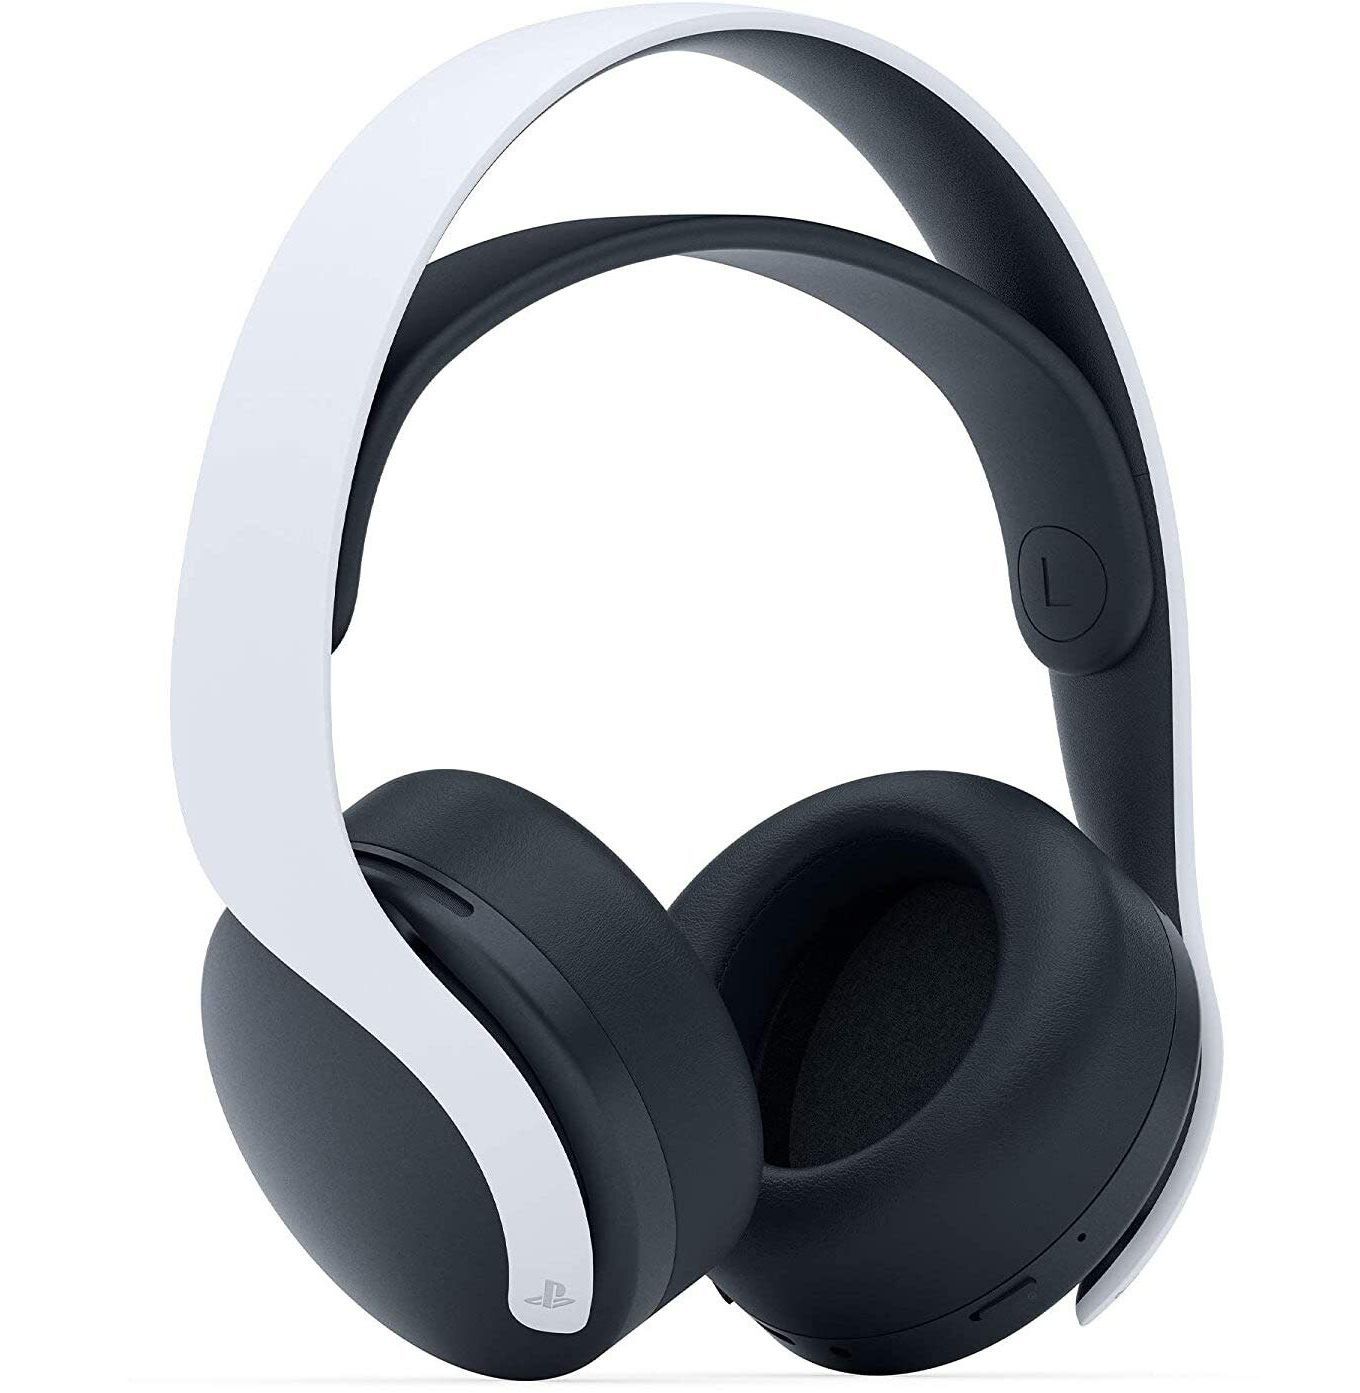 Isoleren onderwerp eindeloos 6 Best PS5 Headsets 2021 - Top 3D Audio Headphones for PS5